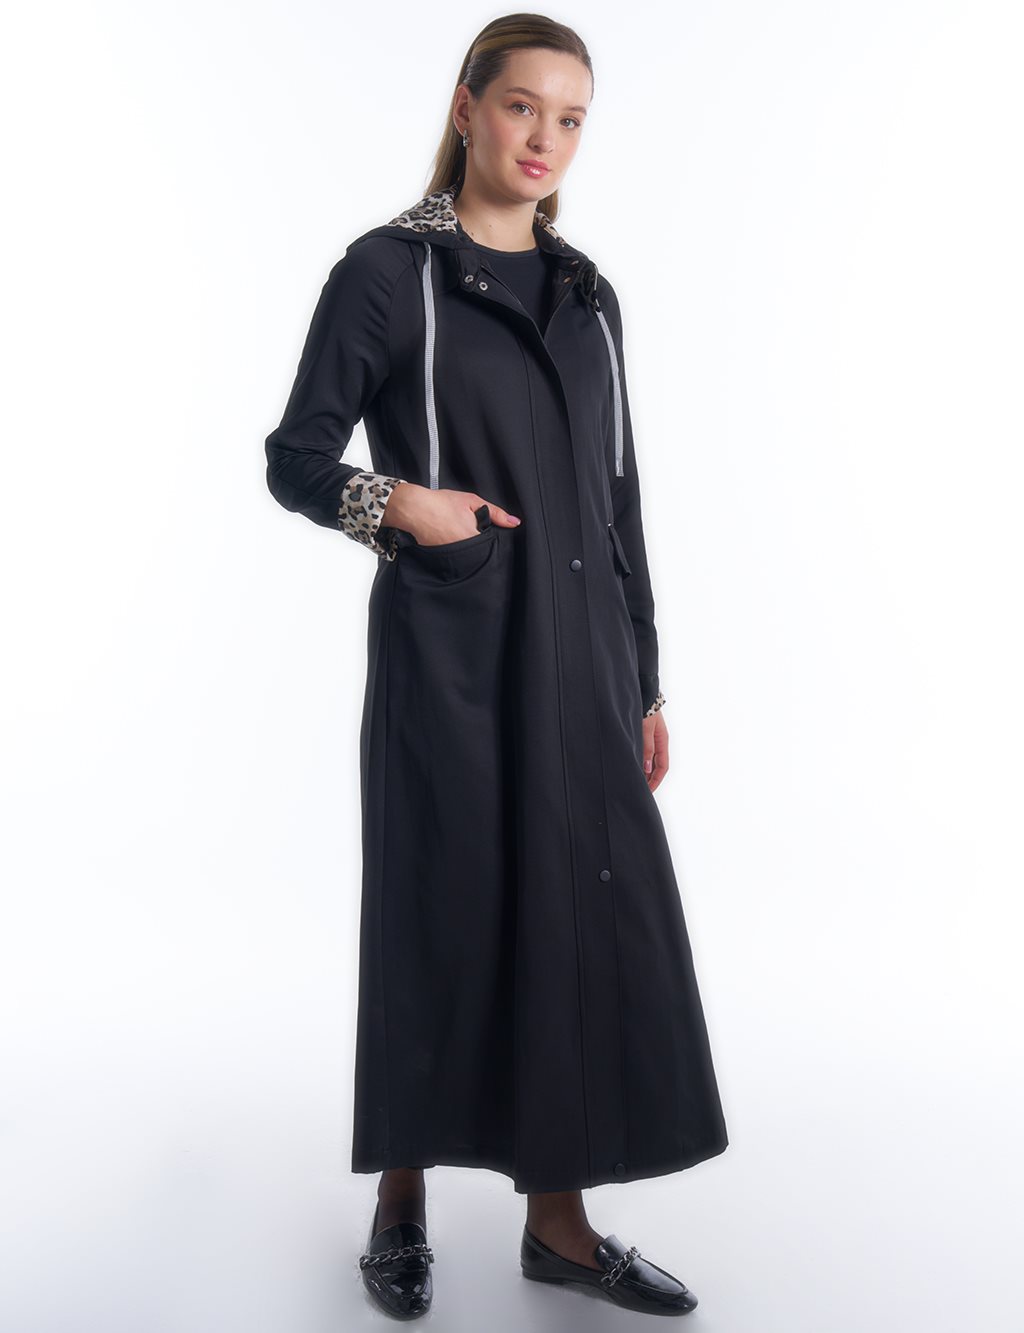  Hidden Snap Zipper and Snap Fastener Overcoat in Black